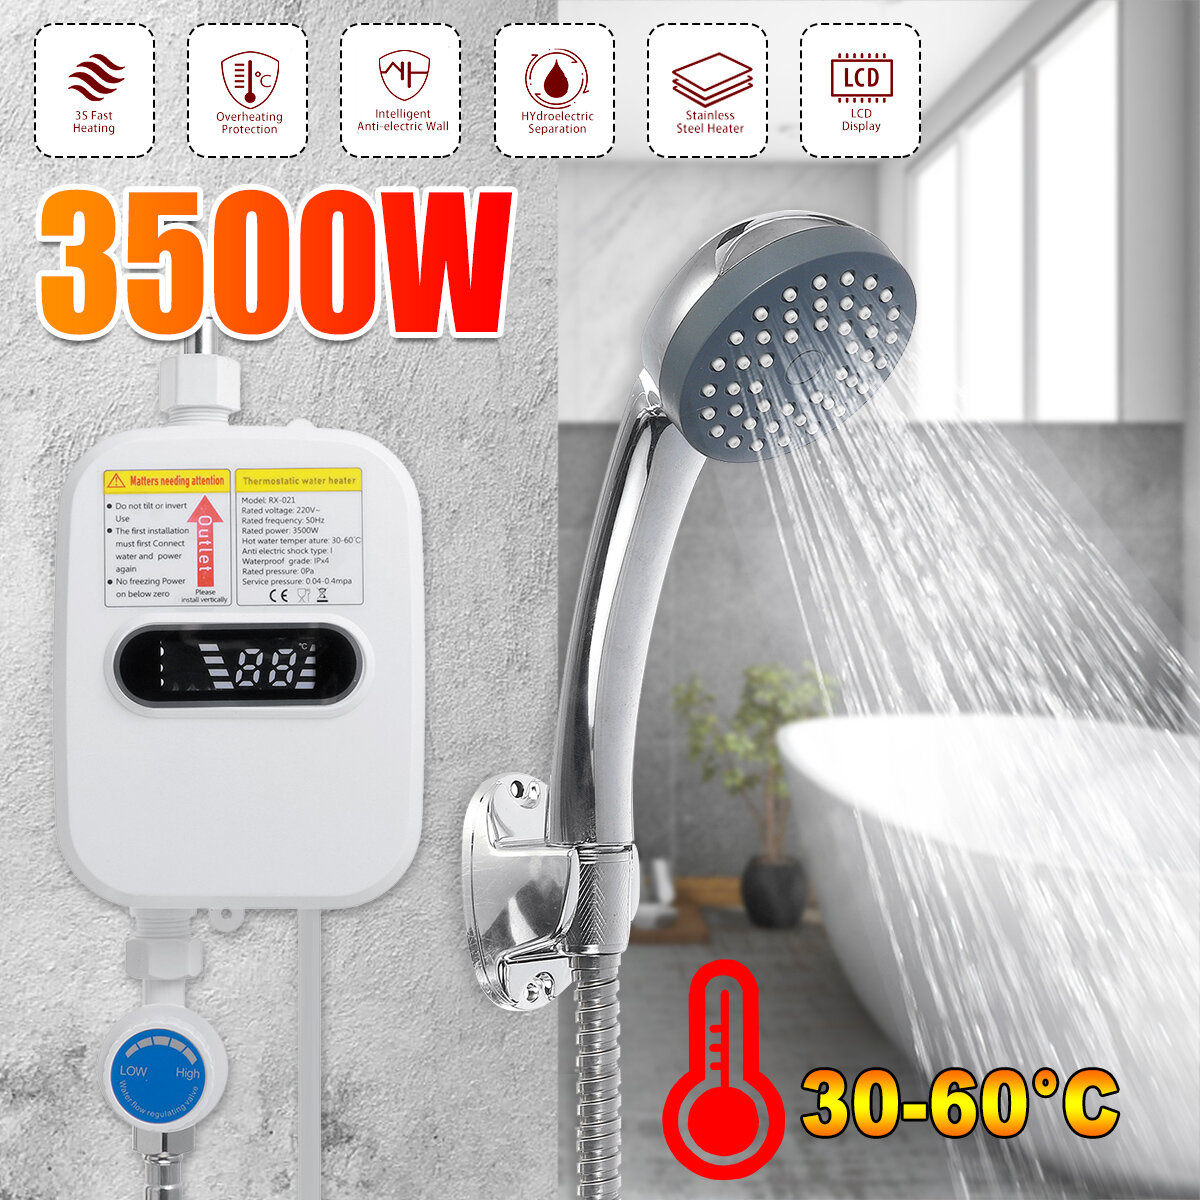 Στα 39.16 € από αποθήκη Κίνας | 3500W 220V Mini Water Heater Hot Electric Tankless Household Bathroom Faucet with Shower Head LCD Temperature Display